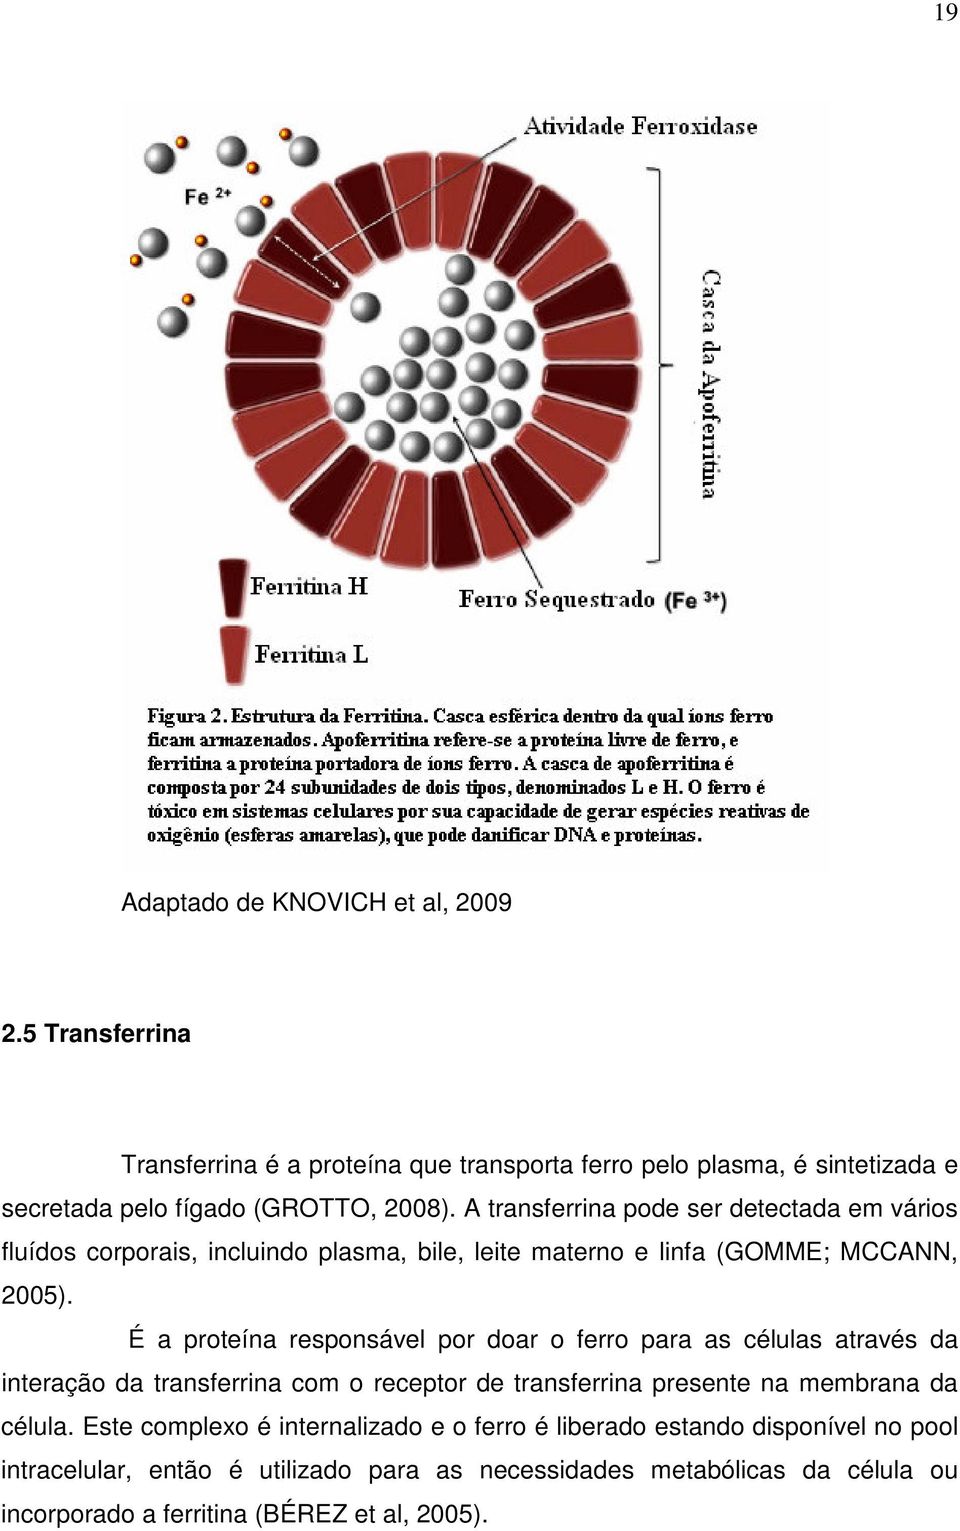 A transferrina pode ser detectada em vários fluídos corporais, incluindo plasma, bile, leite materno e linfa (GOMME; MCCANN, 2005).